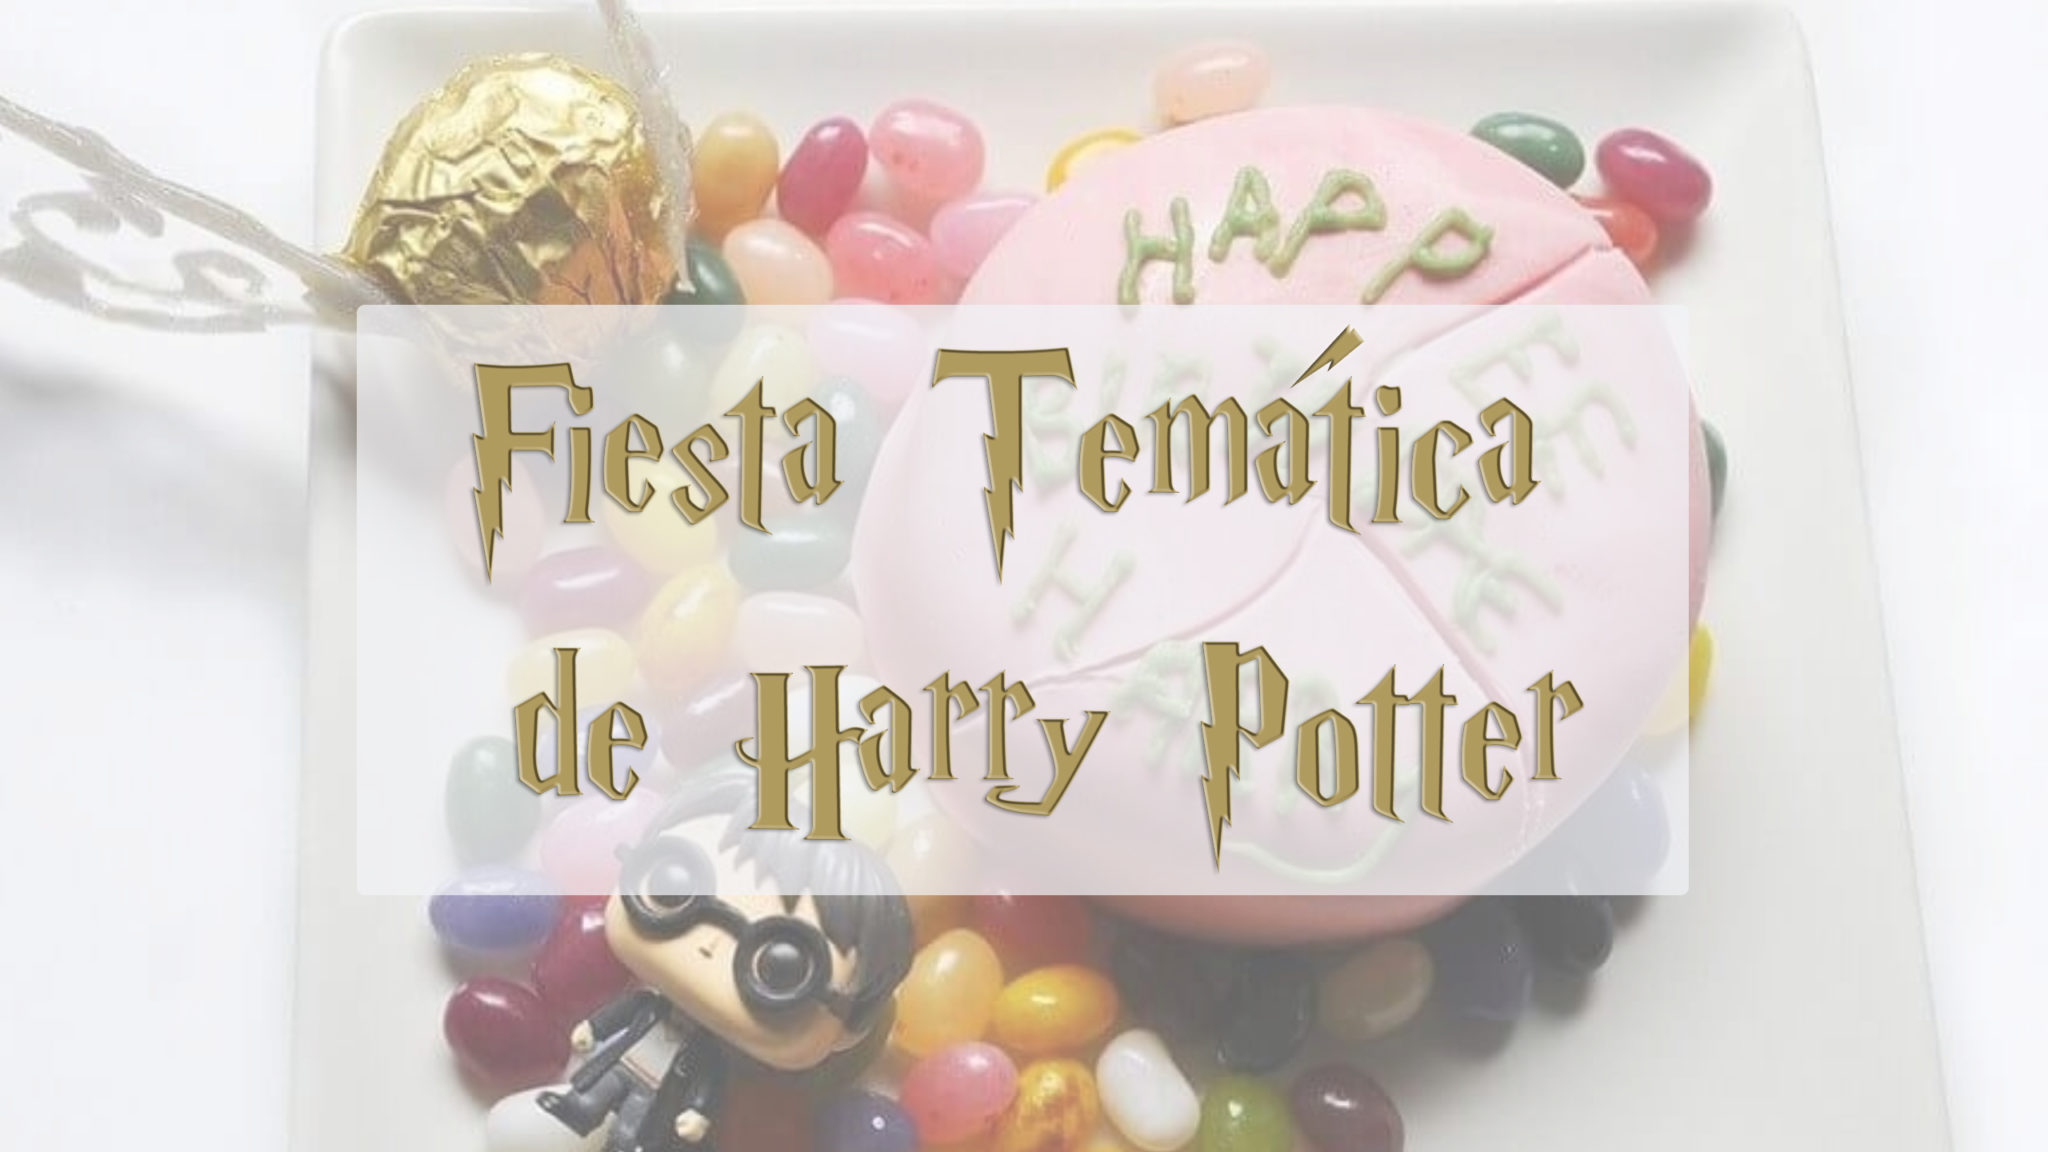 Mejores ideas decoración Harry Potter - Cumpleaños Harry Potter